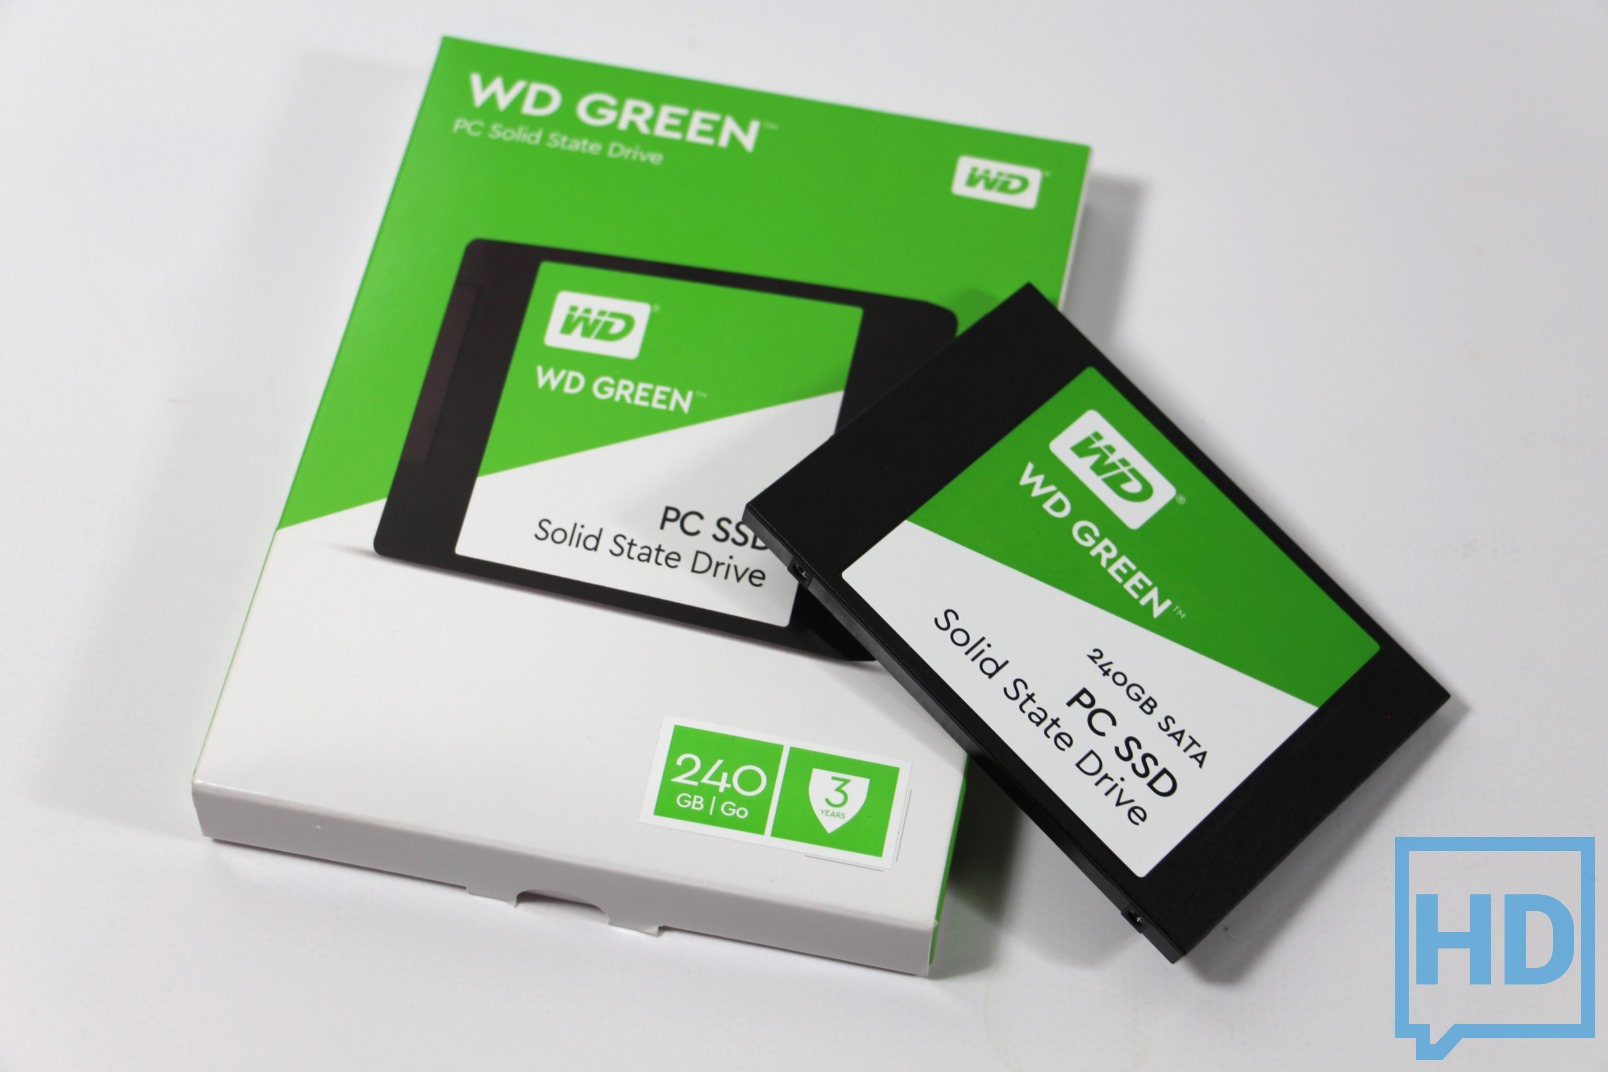 Review Digital WD Green SSD 240GB